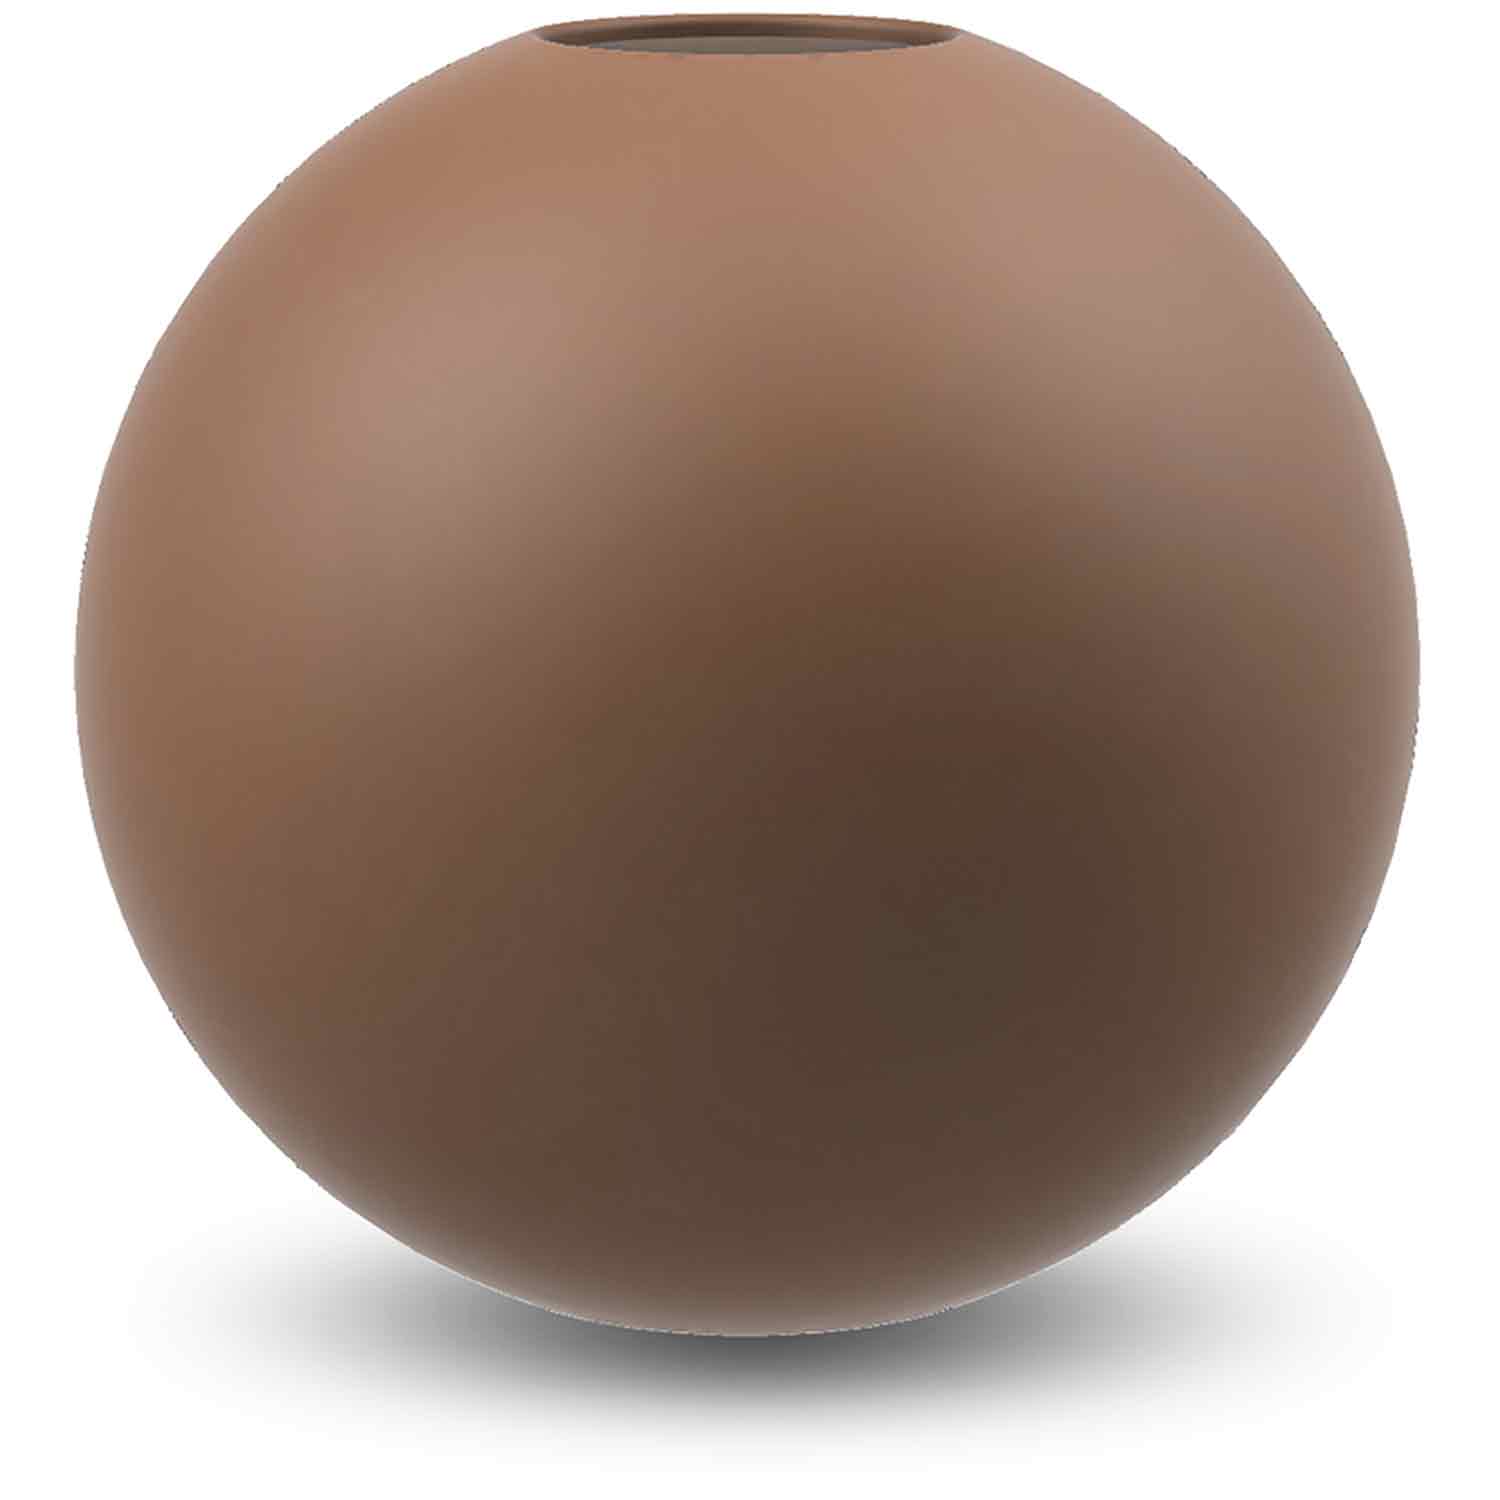 Cooee Design Ball Vas 20 Cm - Vaser Keramik Coconut